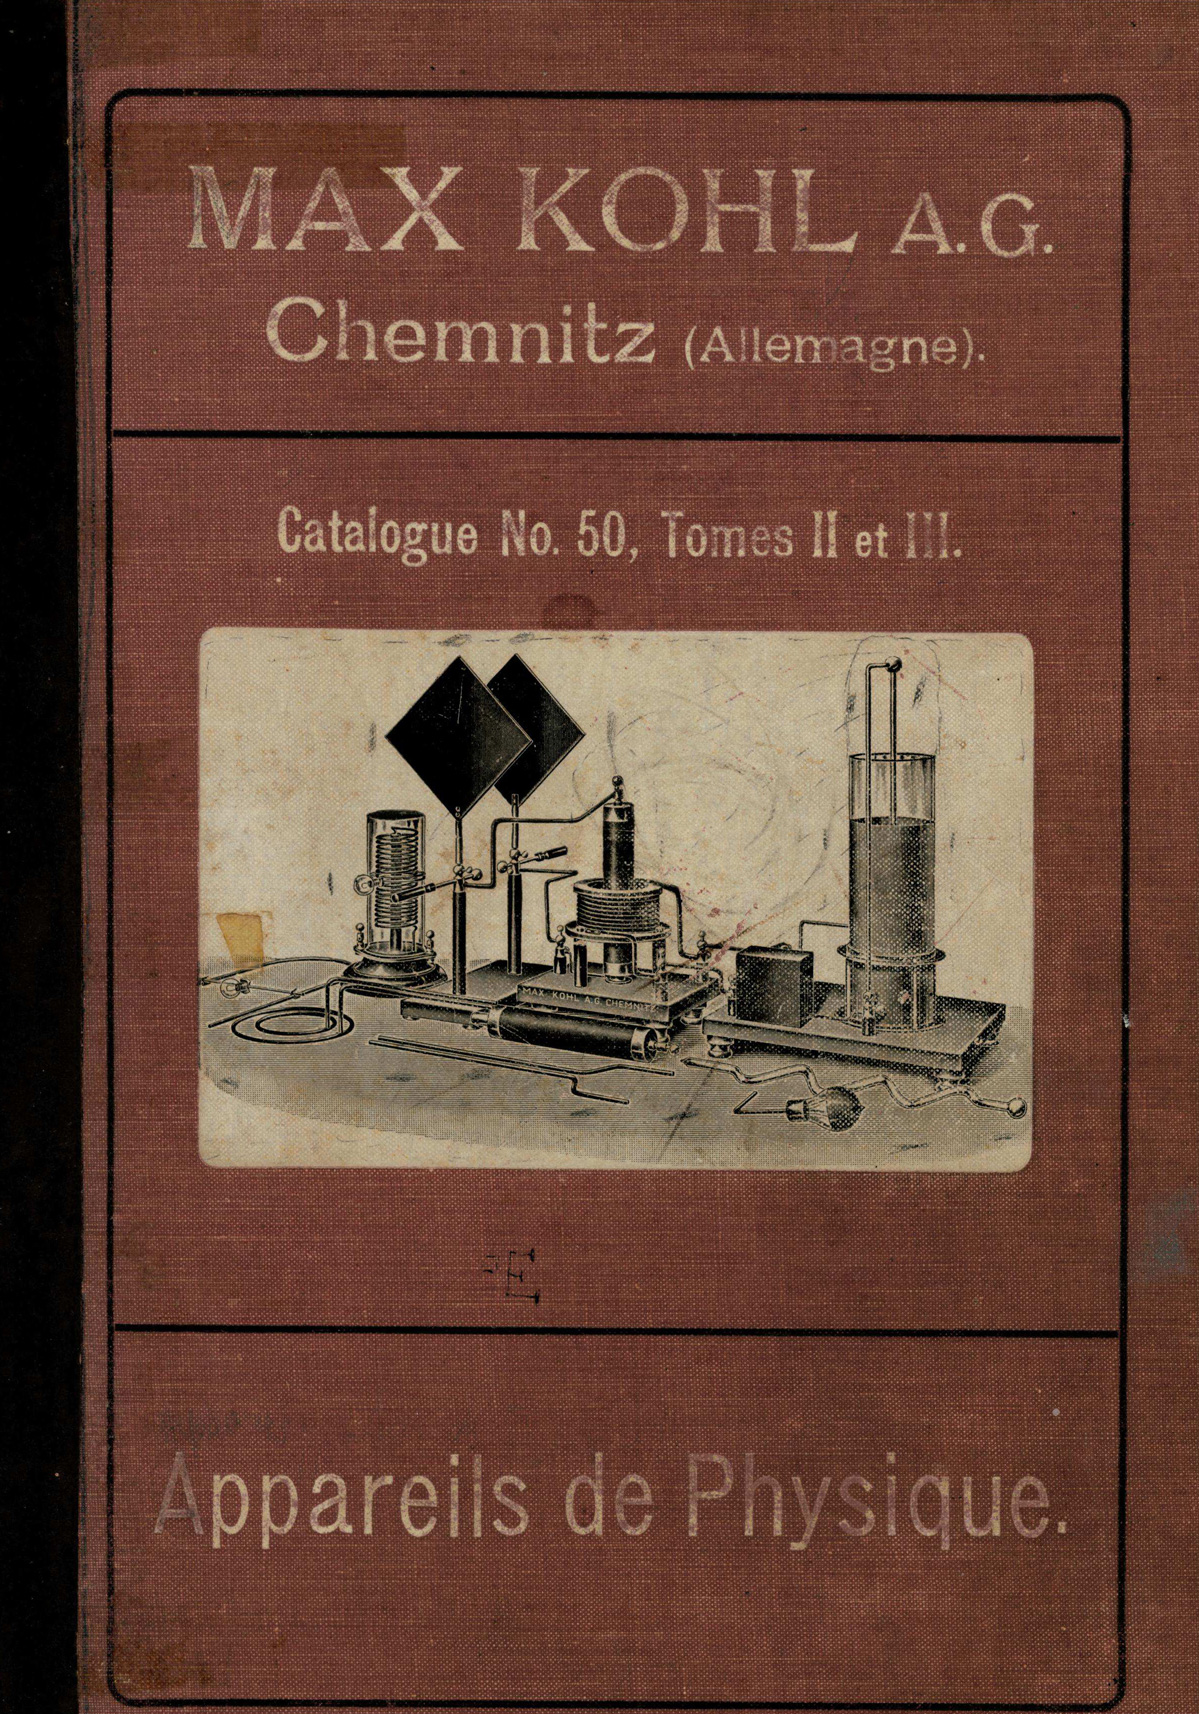 imagem do catálogo MAX KHOL A. G. - Chemnitz - Allemagne - Appareils de Physique - Catalogue No. 50. Tomes II et III